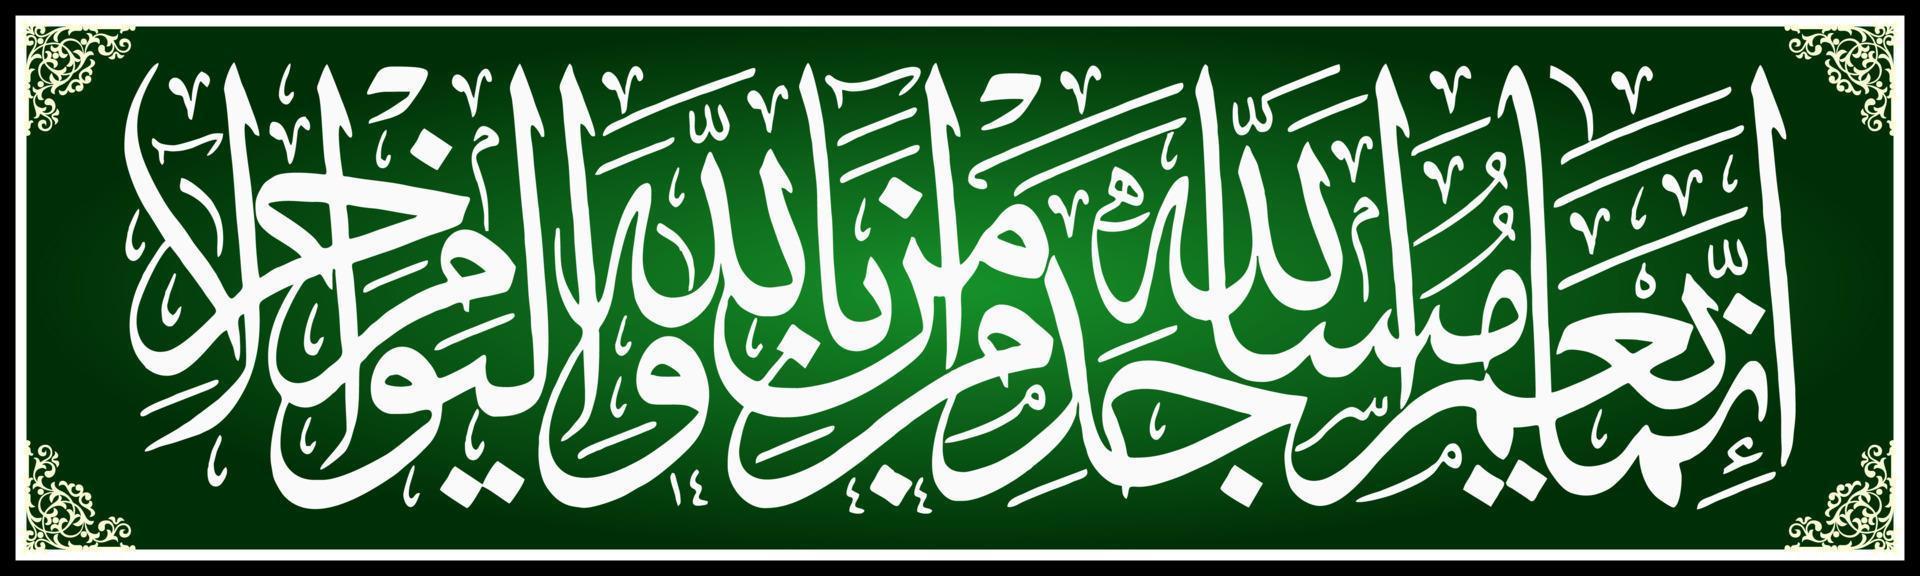 calligraphie arabe, al qur'an surah at taubah 18 , traduction seuls ceux qui prospèrent dans les mosquées d'allah sont ceux qui croient en allah et au jour à venir vecteur